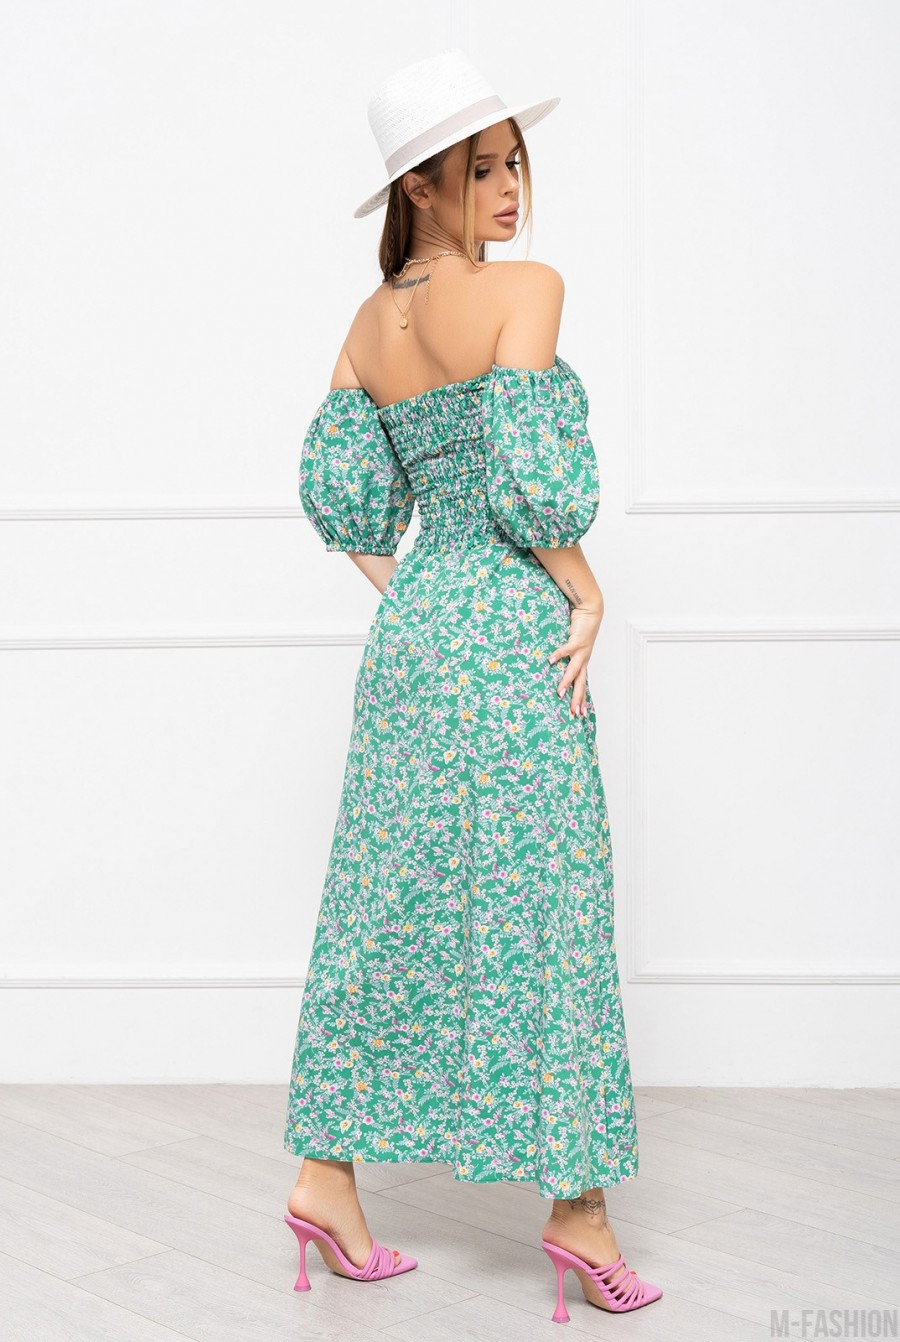 Зеленое цветочное платье с лифом-жаткой - Фото 3